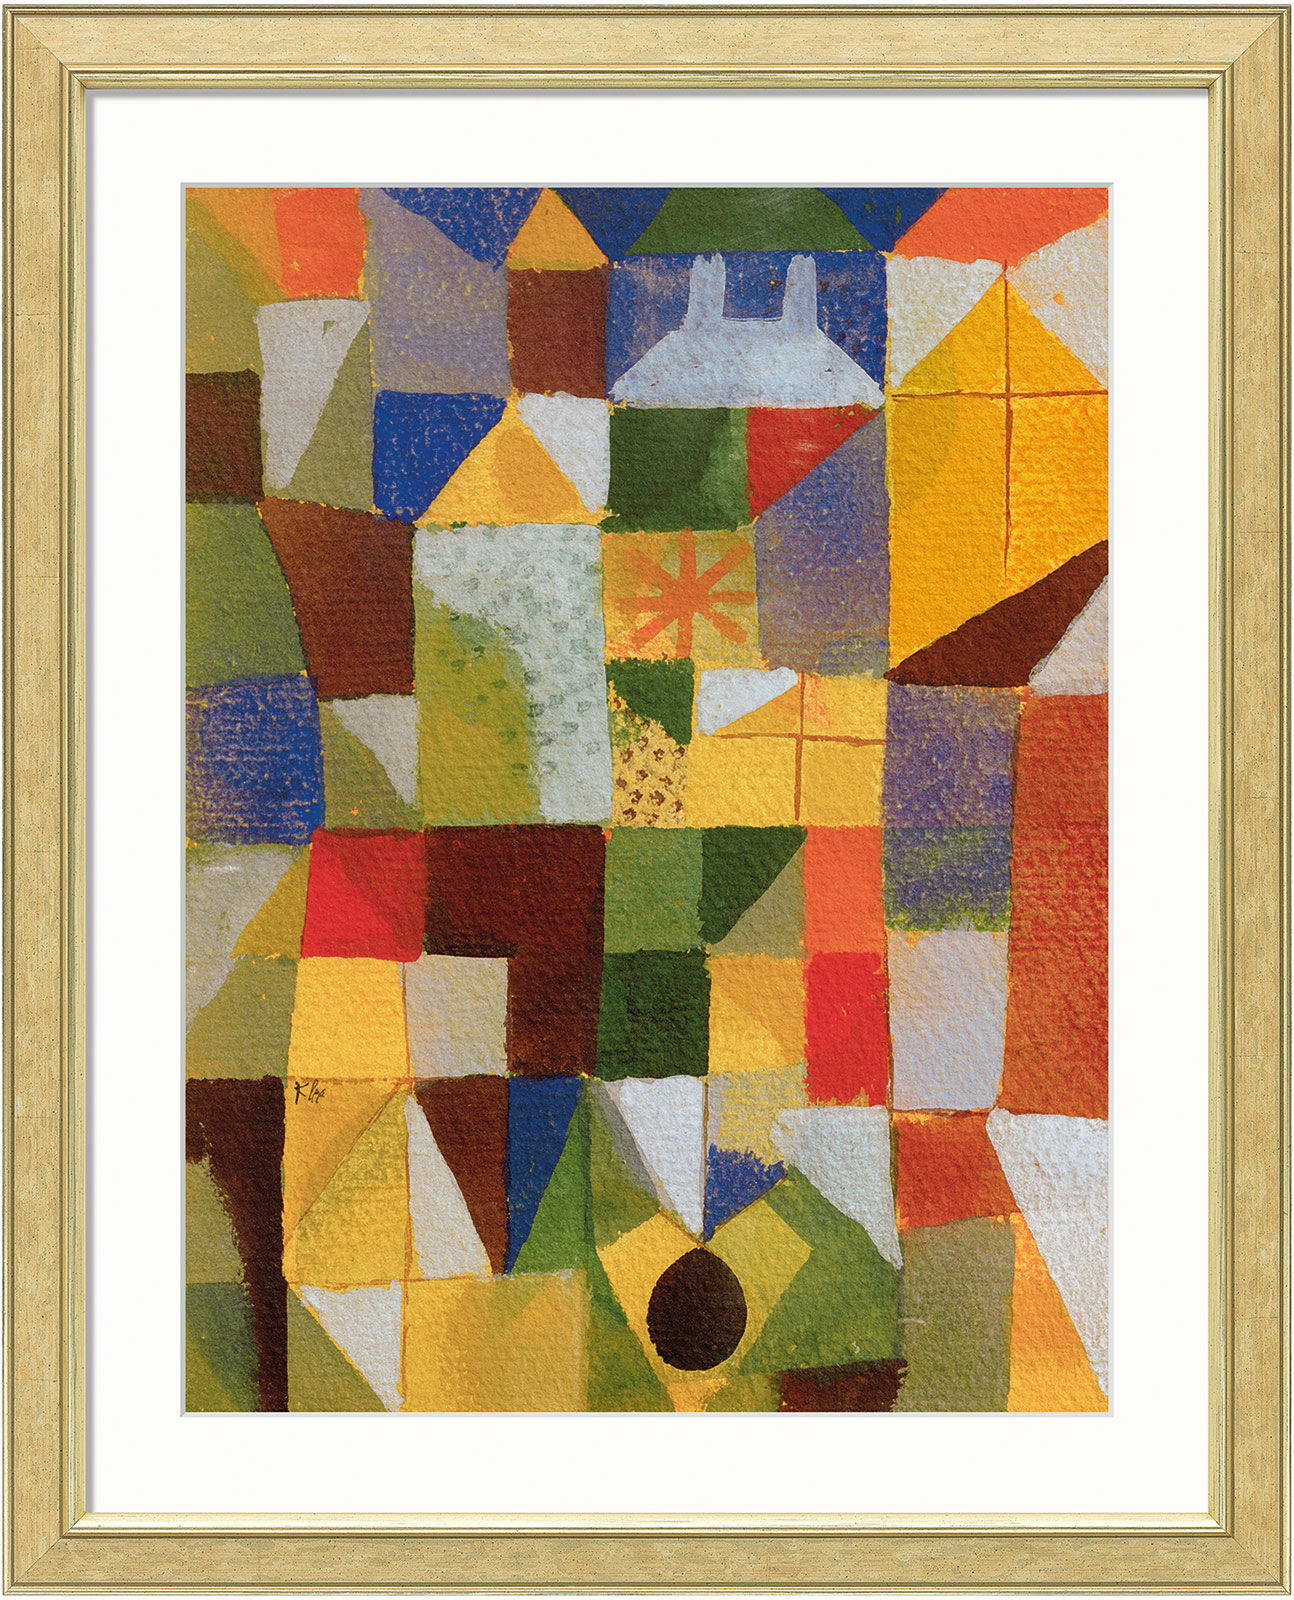 Tableau "Composition urbaine avec fenêtres jaunes" (1919), encadré von Paul Klee